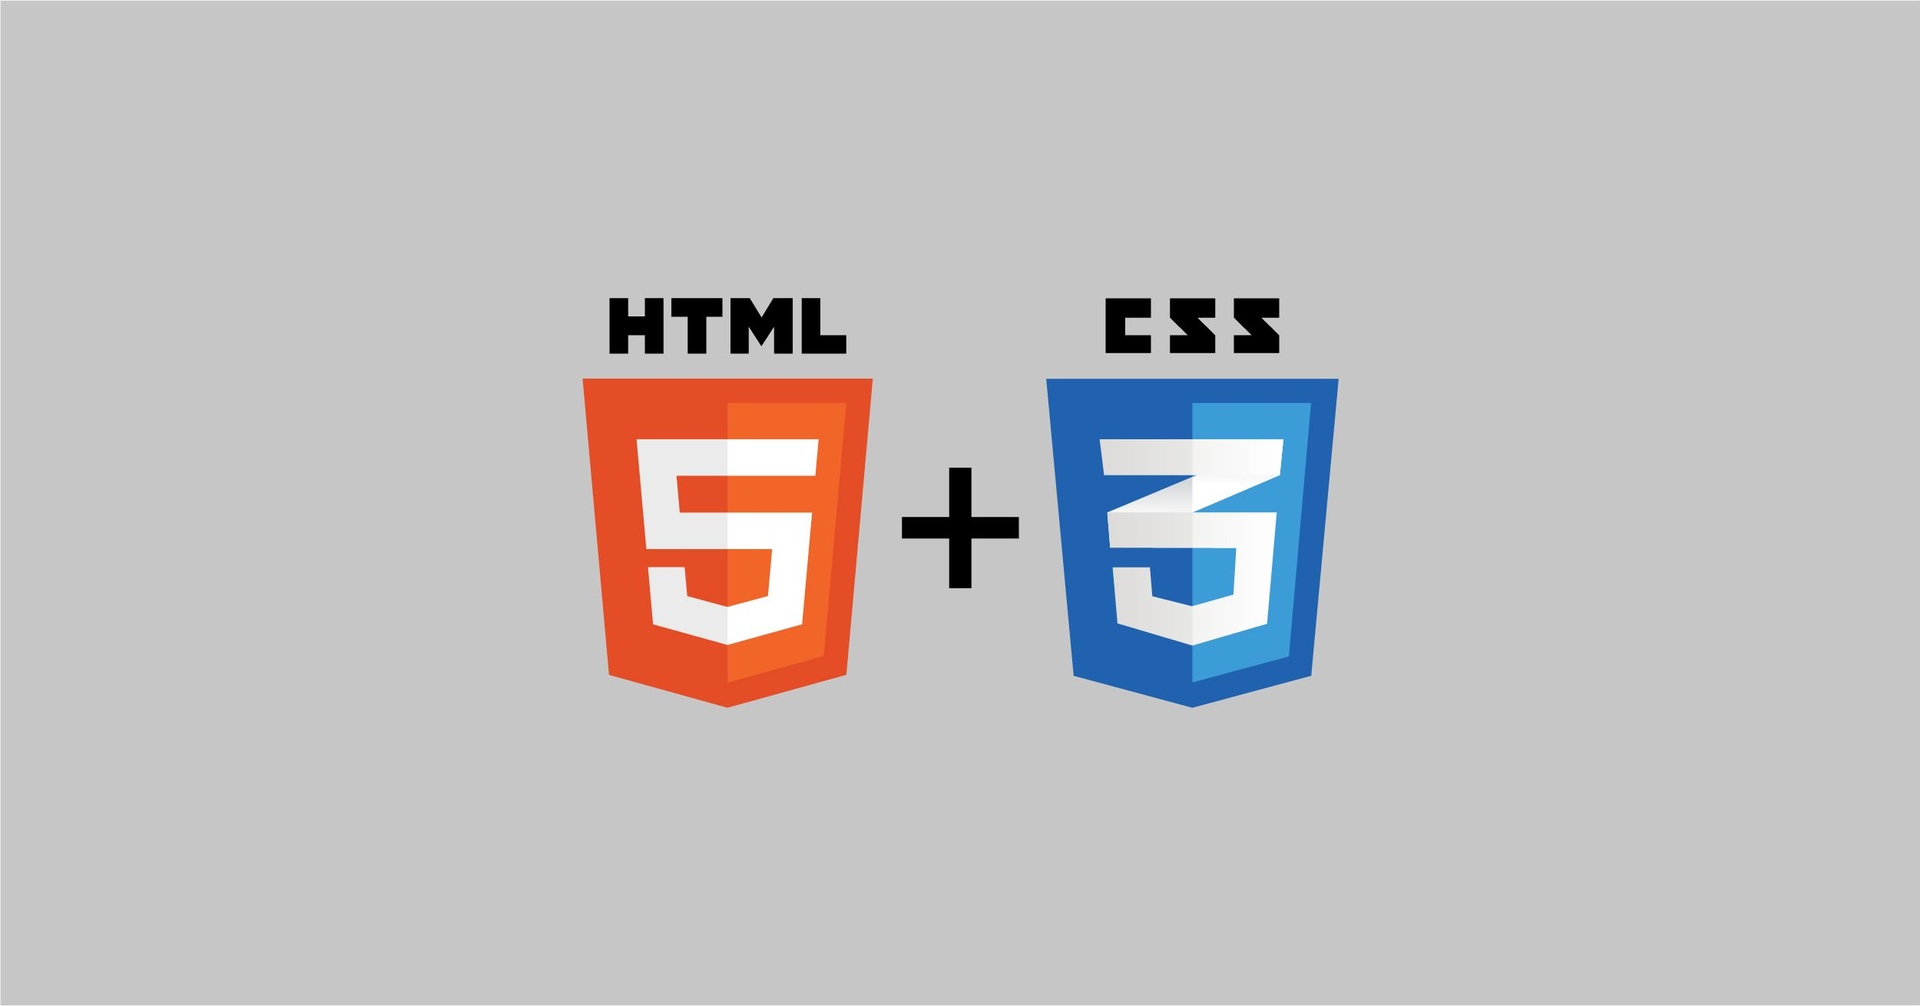 كتب تساعدك على تعلم واحتراف تصميم المواقع بلغتي HTML و CSS